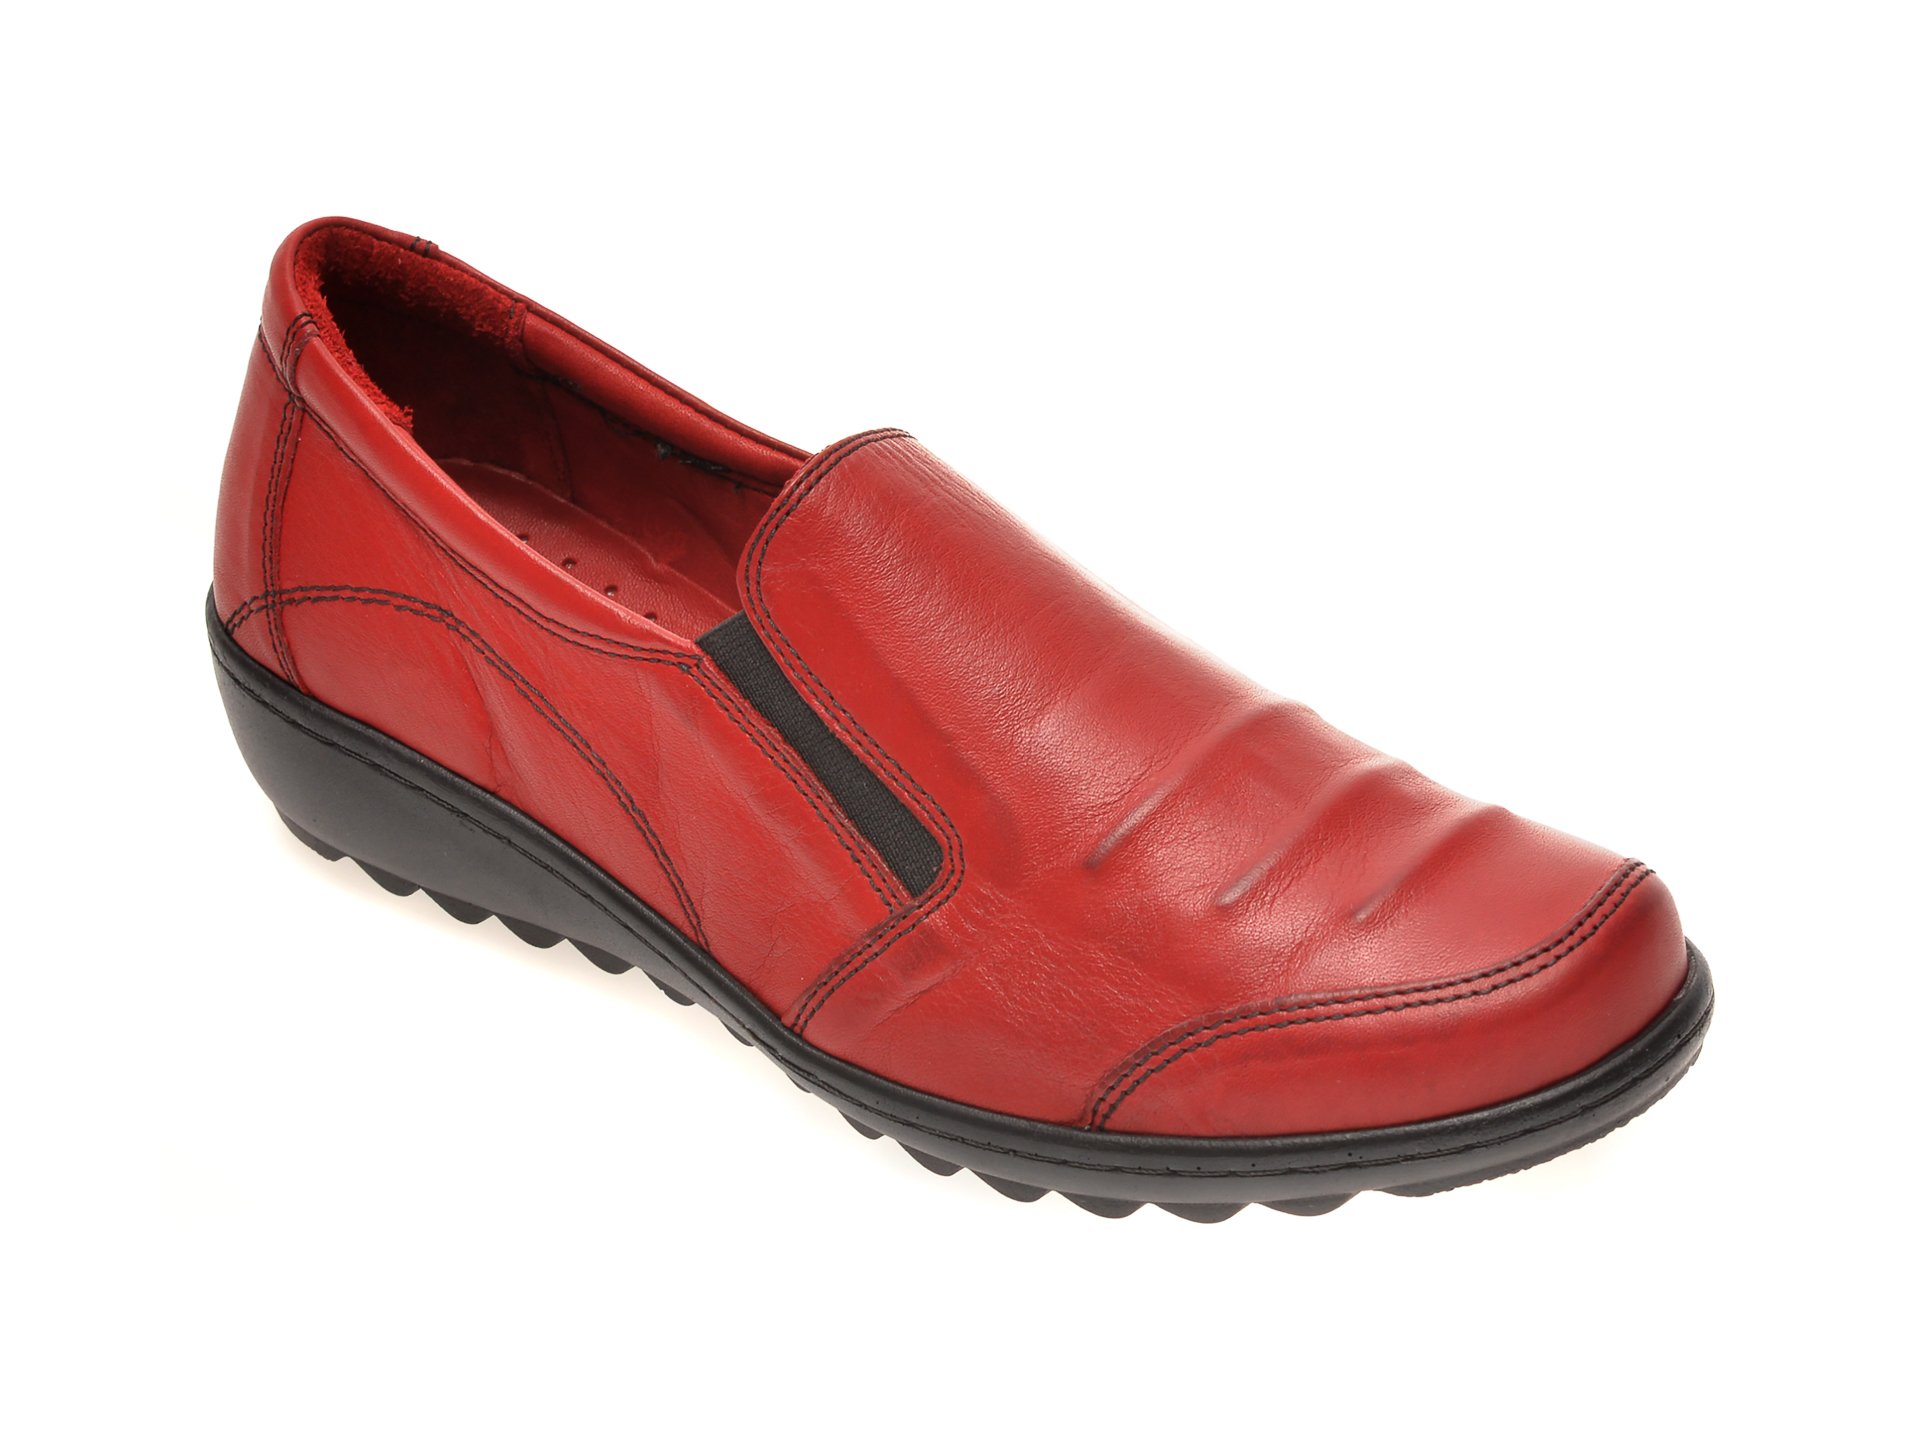 Pantofi PASS COLLECTION rosii, 15115, din piele naturala